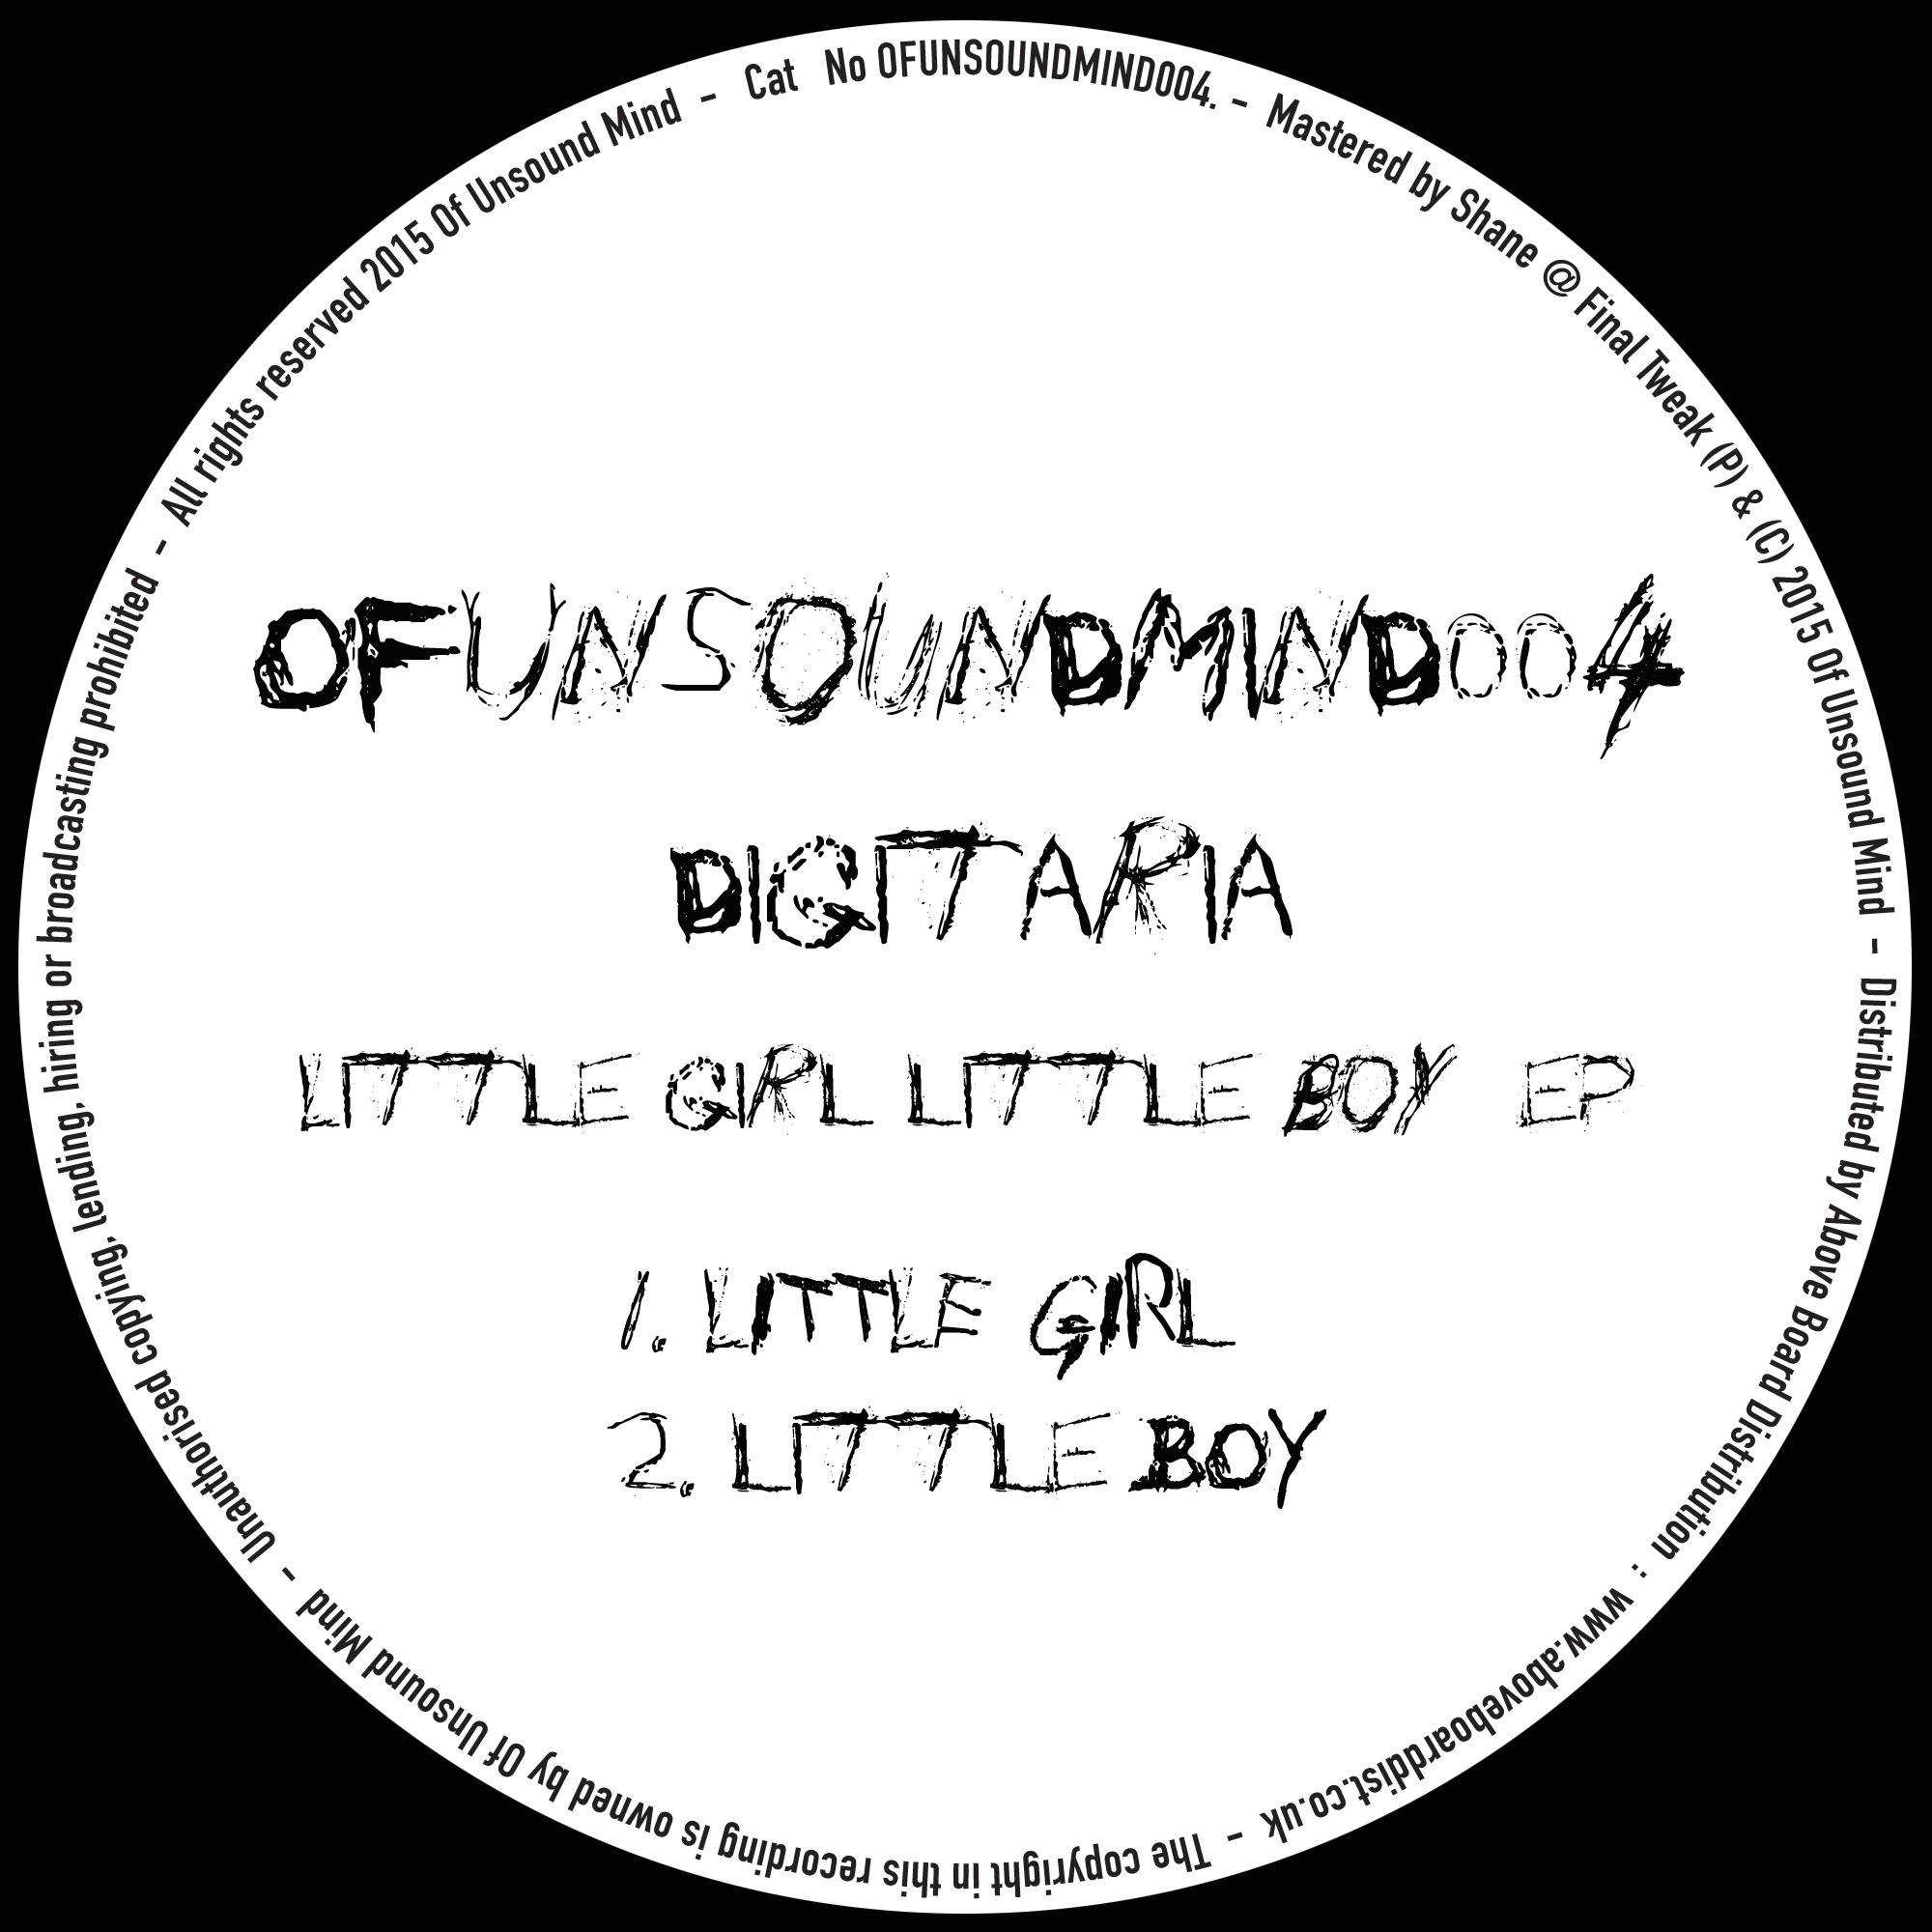 Little Girl (Original Mix)